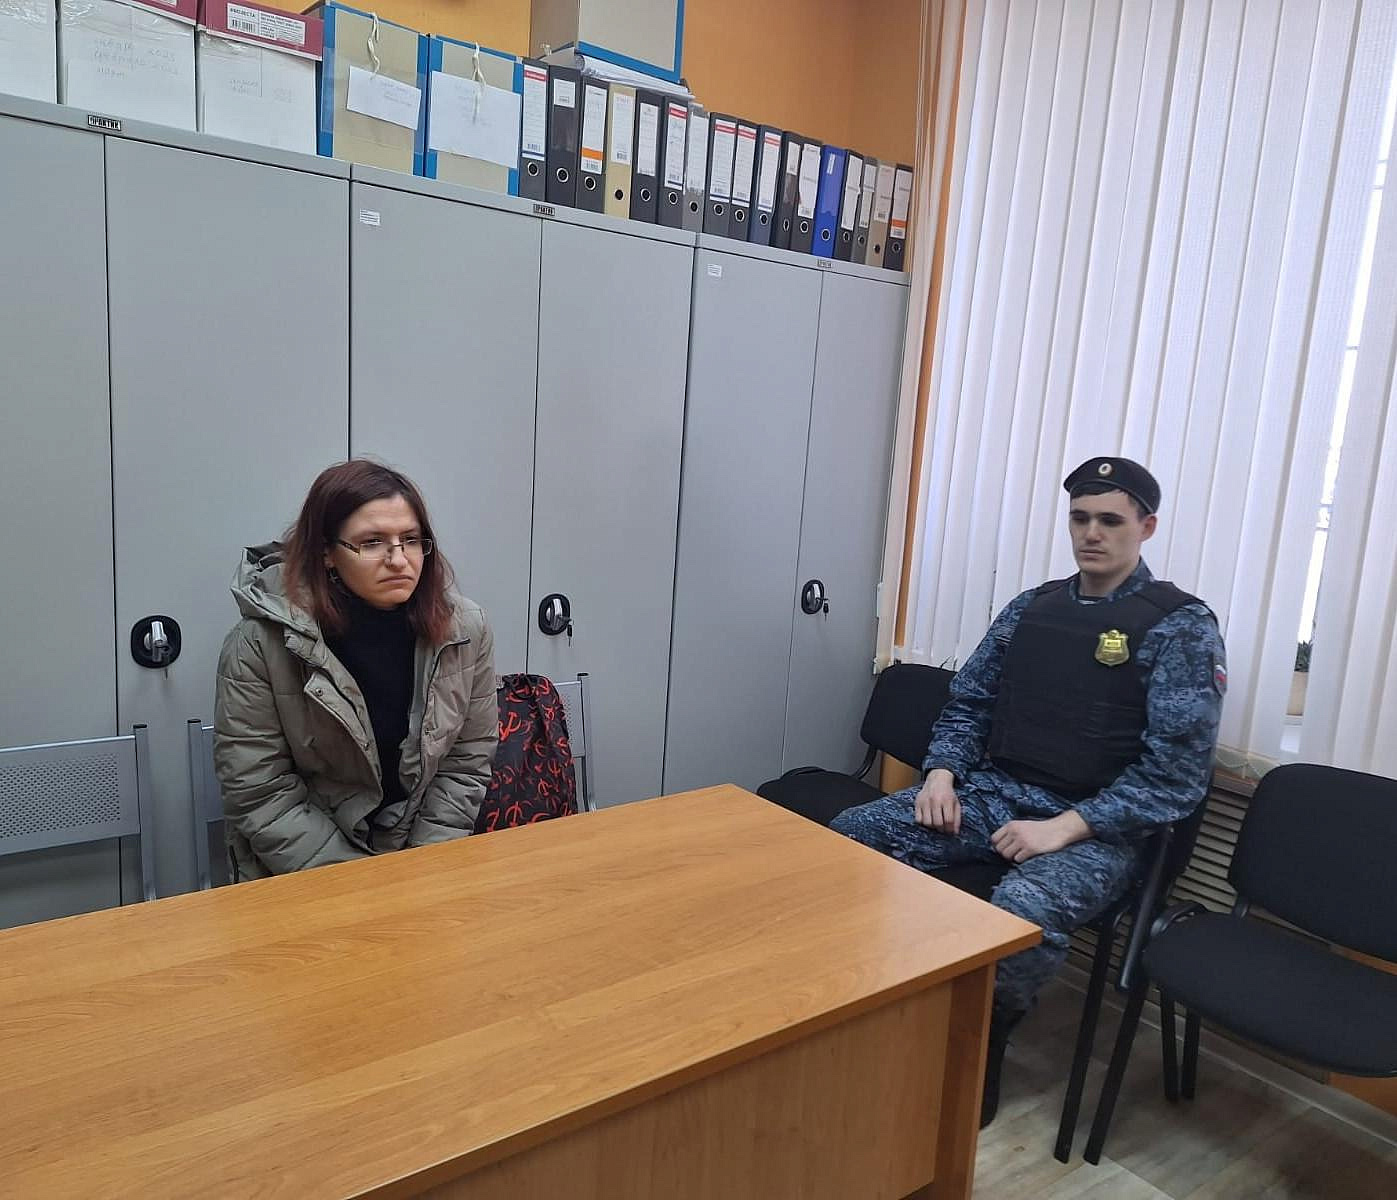 Испортившую бюллетени зелёнкой женщину оштрафовали на 4000 рублей